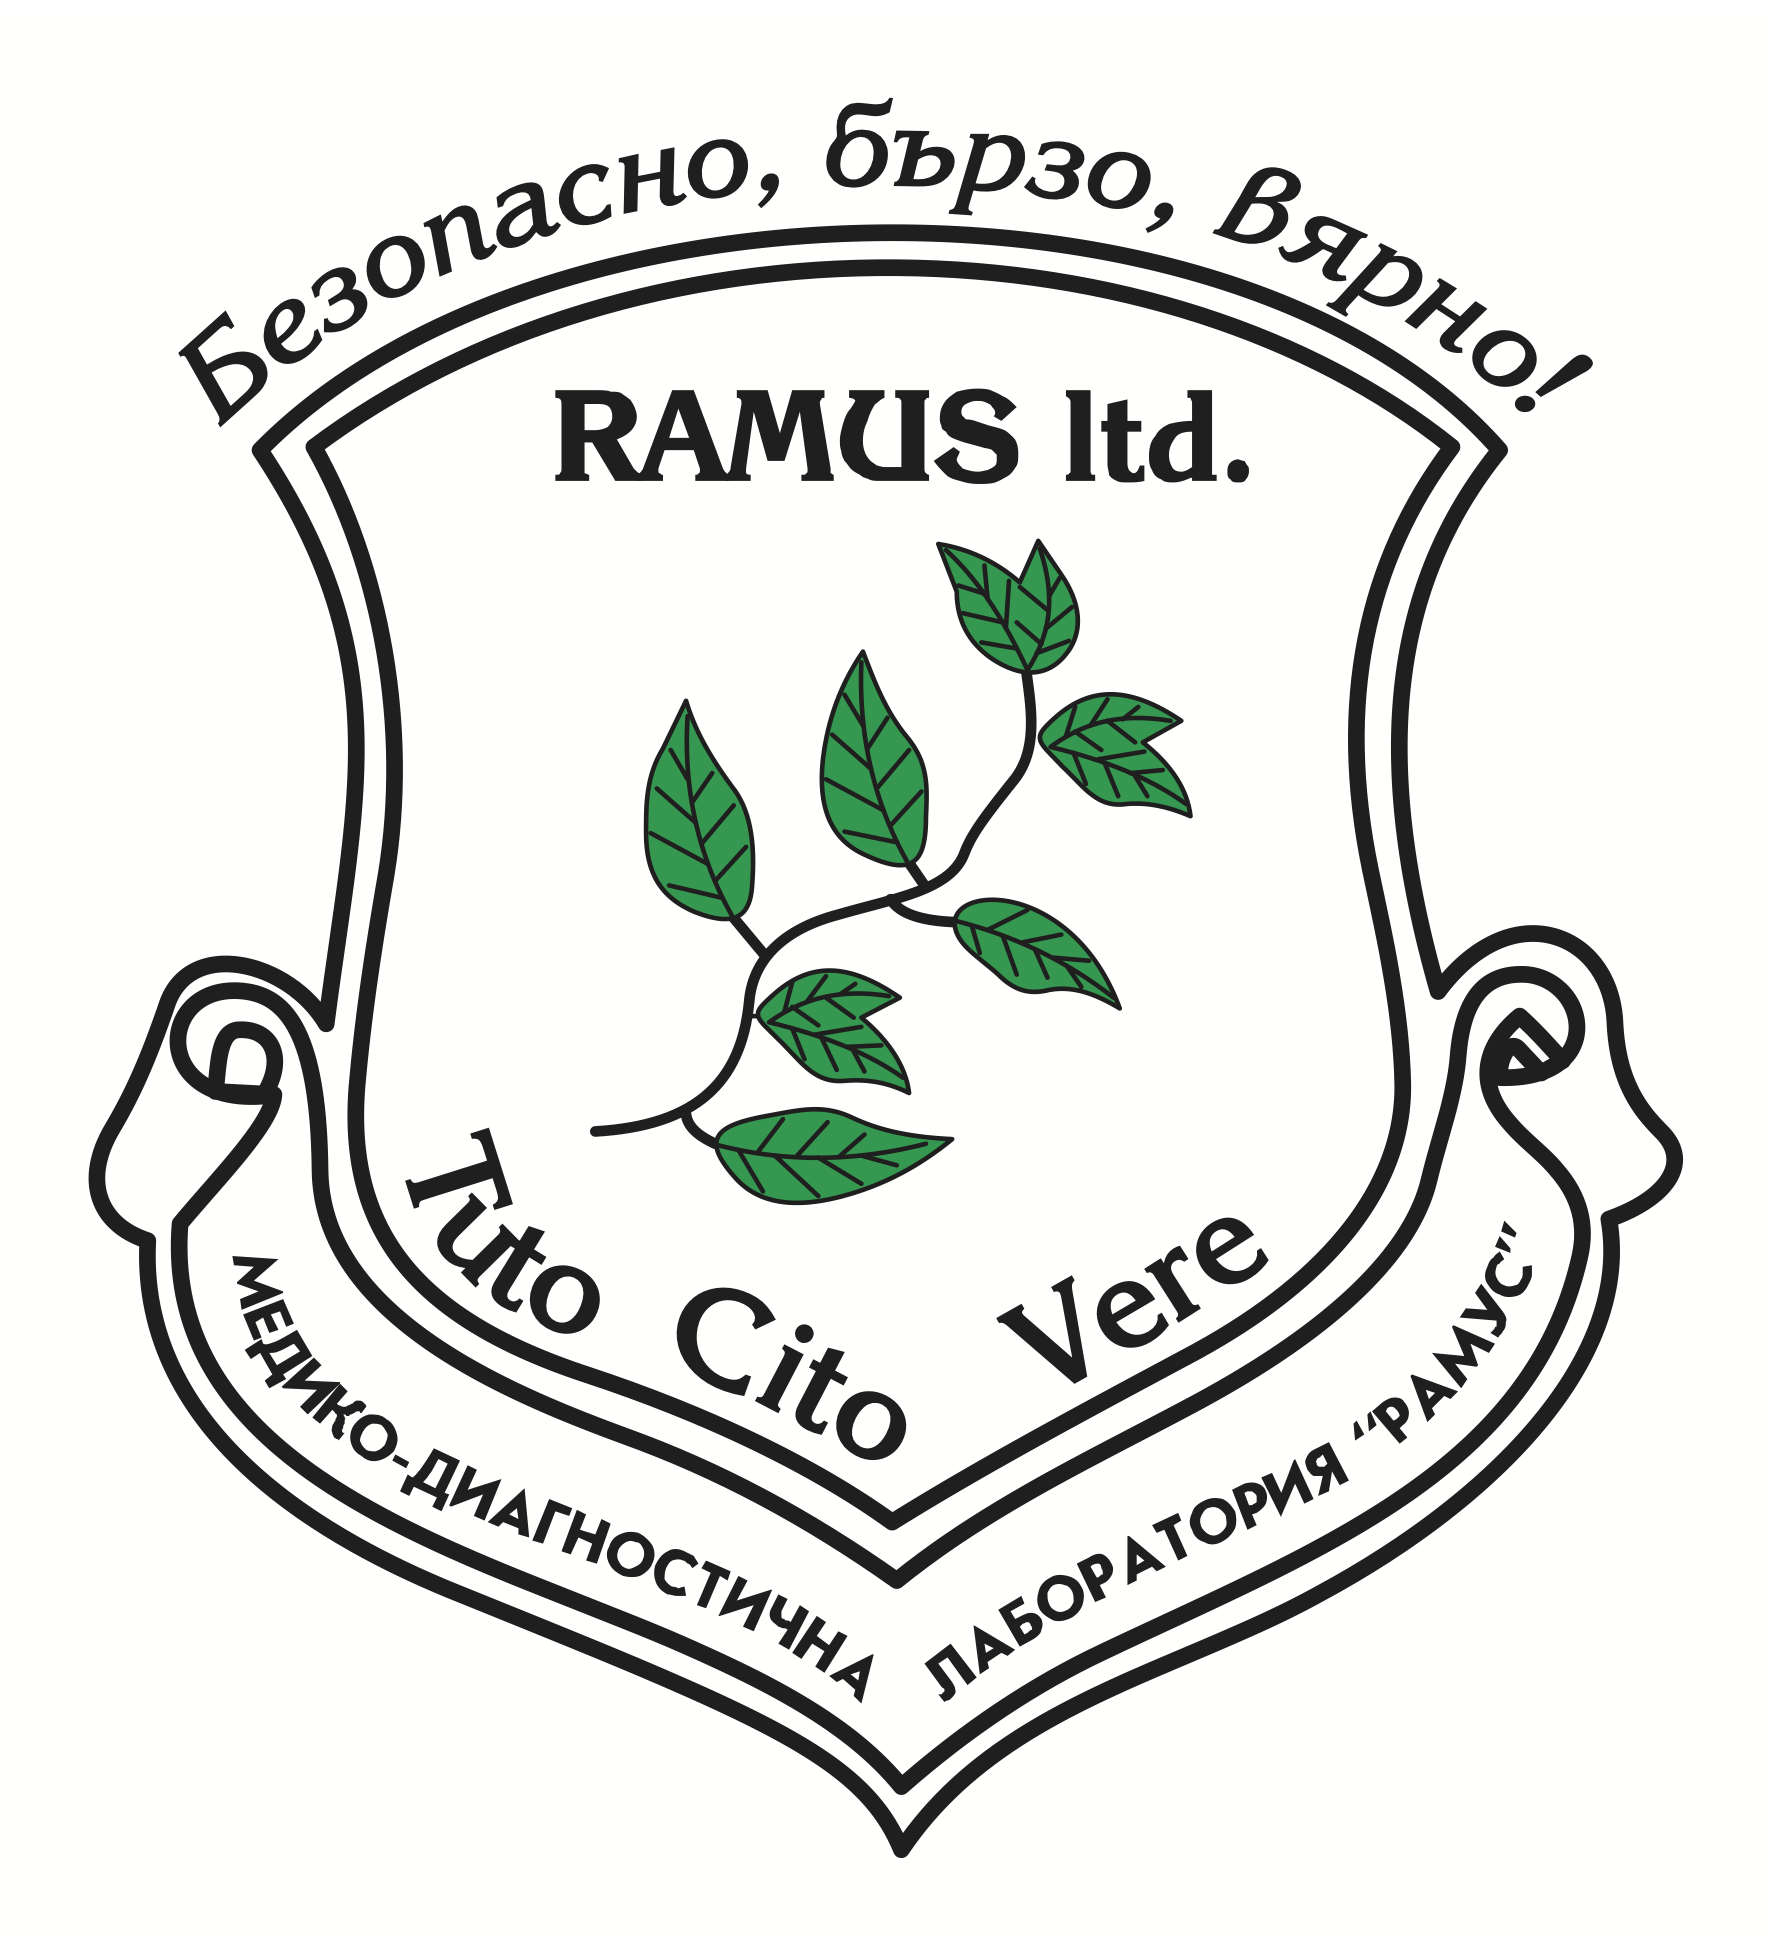 Ramus